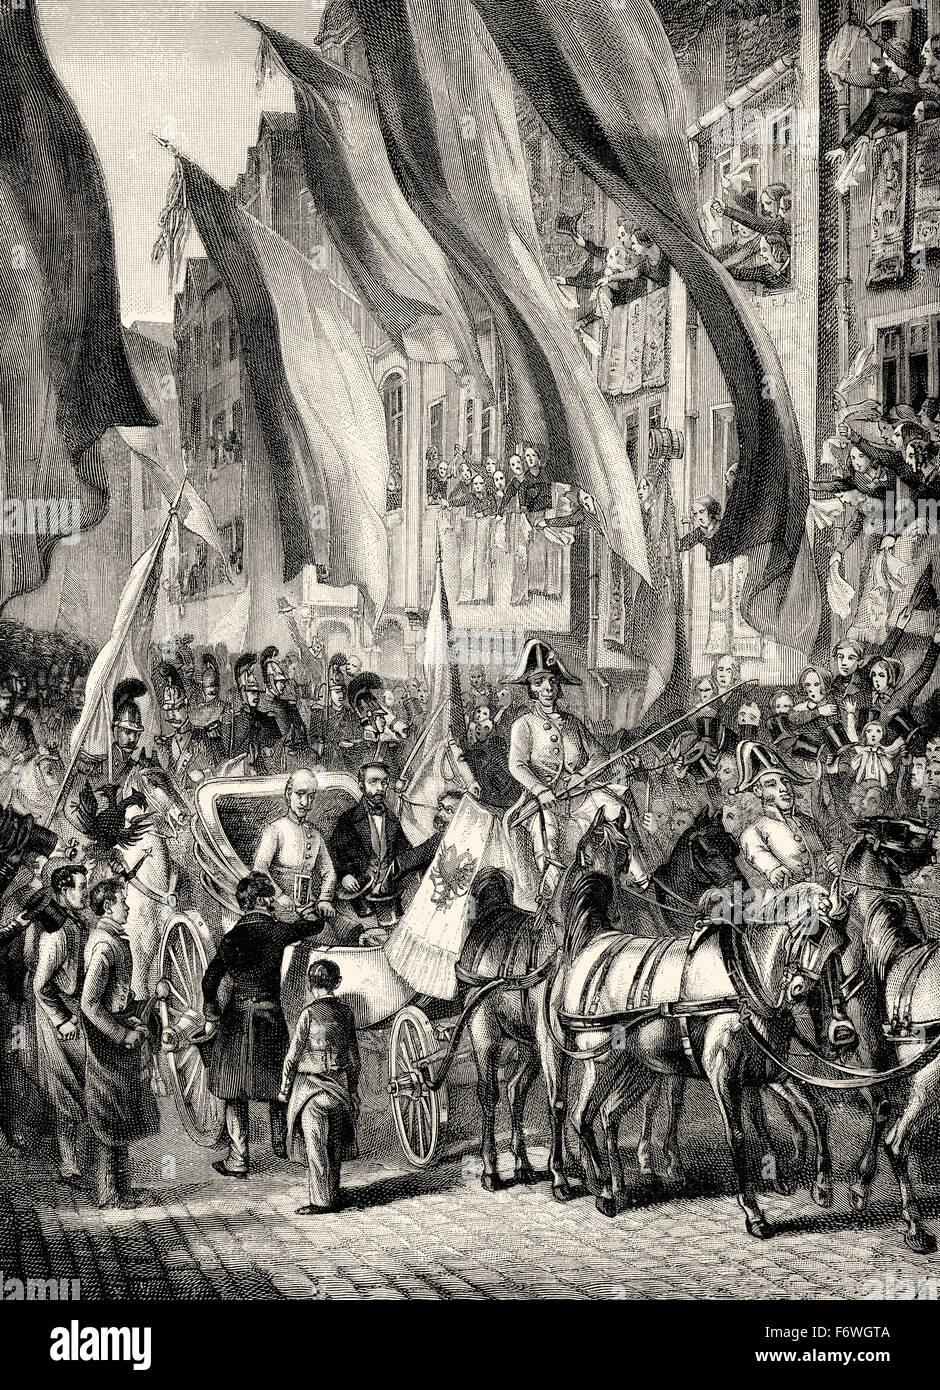 El archiduque Juan de Austria, 1782 - 1859, un austríaco, el mariscal de campo, llegada como regente Imperial Alemán en Frankfurt en 1848, el Erzherzog Foto de stock